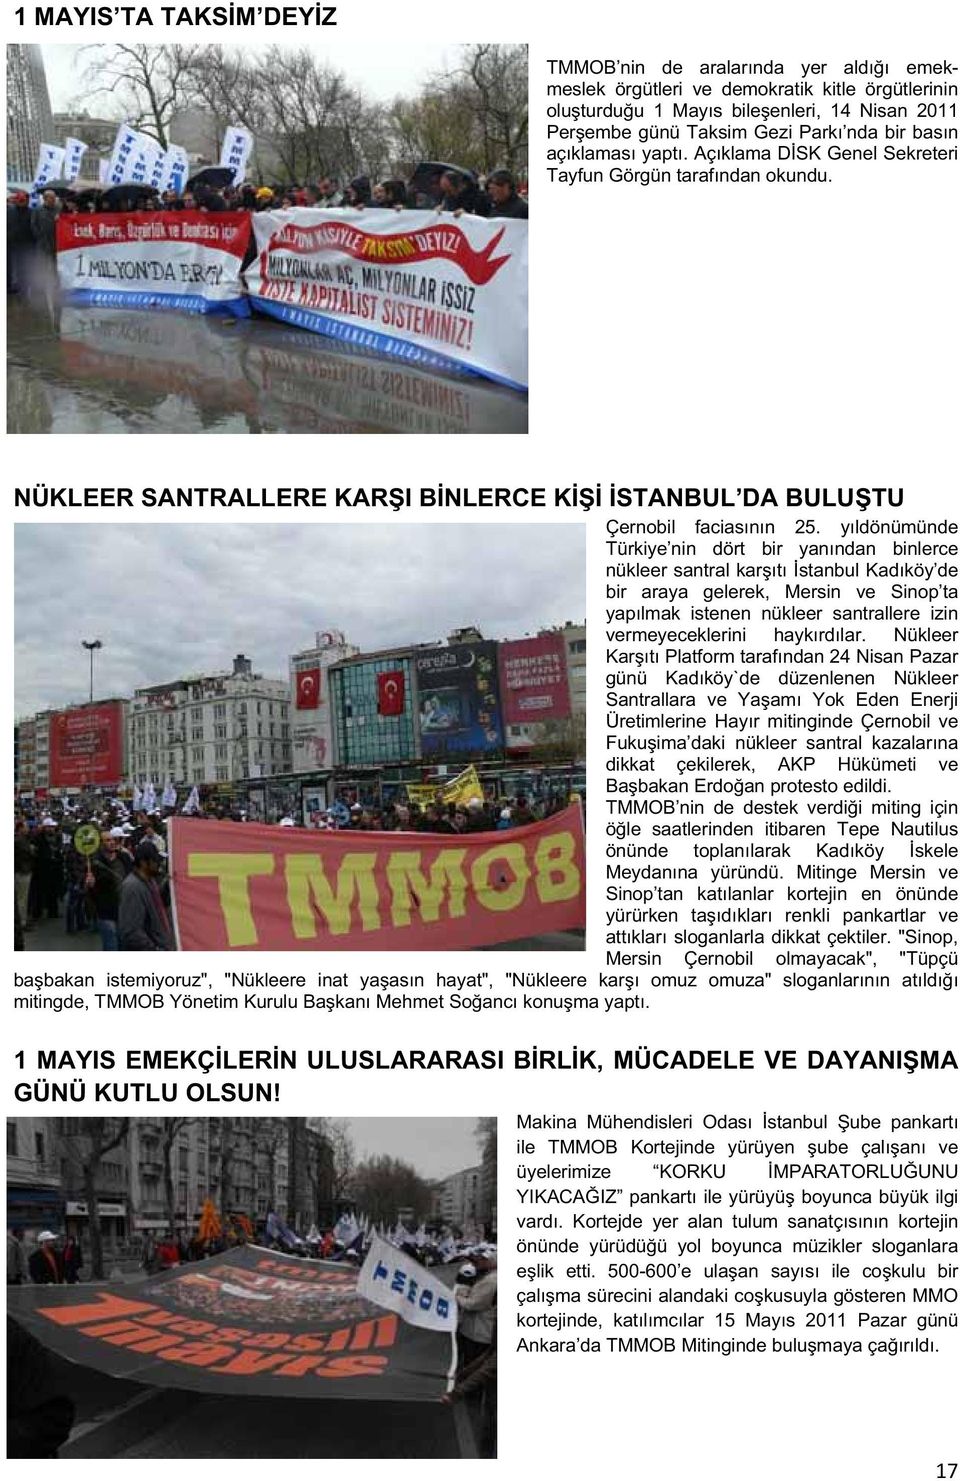 yıldönümünde Türkiye nin dört bir yanından binlerce nükleer santral karıtı stanbul Kadıköy de bir araya gelerek, Mersin ve Sinop ta yapılmak istenen nükleer santrallere izin vermeyeceklerini